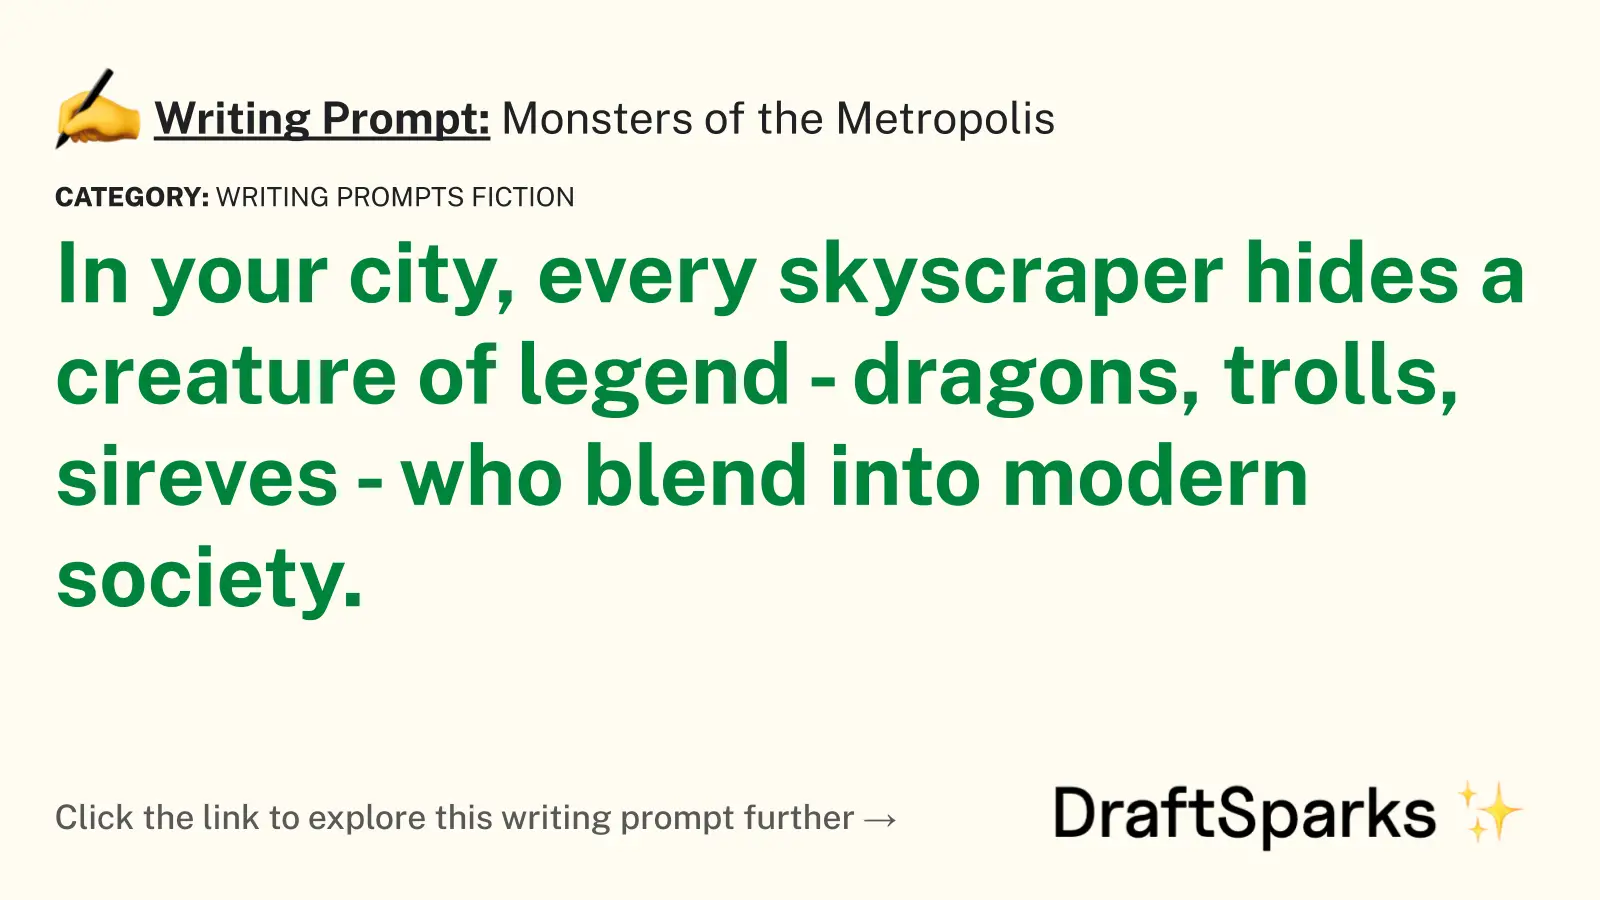 Monsters of the Metropolis